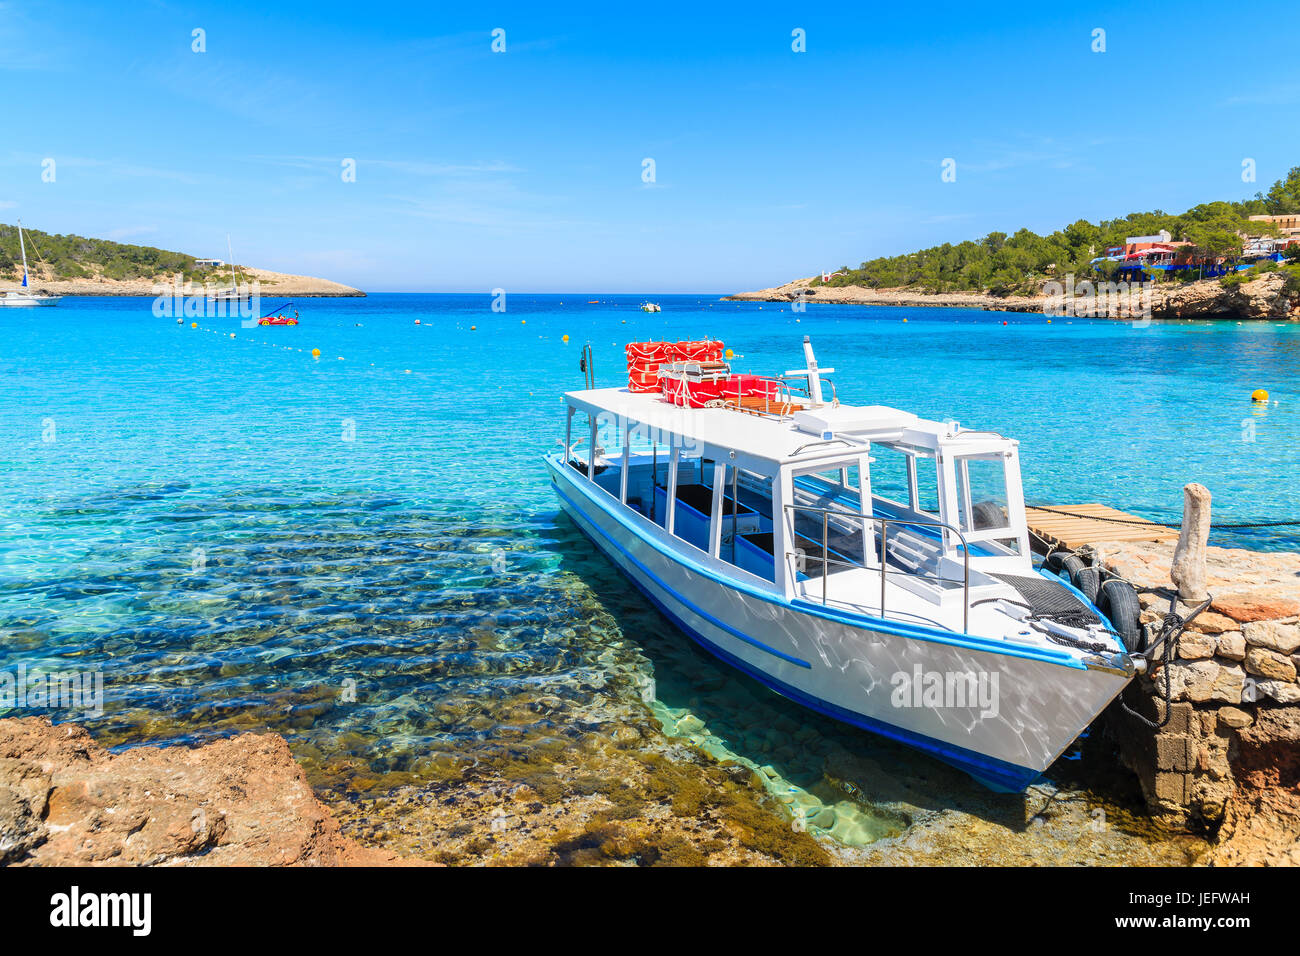 Couleur blanc et bleu pour les touristes en bateau ferry amarre en baie Cala Portinatx, Ibiza island, Espagne Banque D'Images